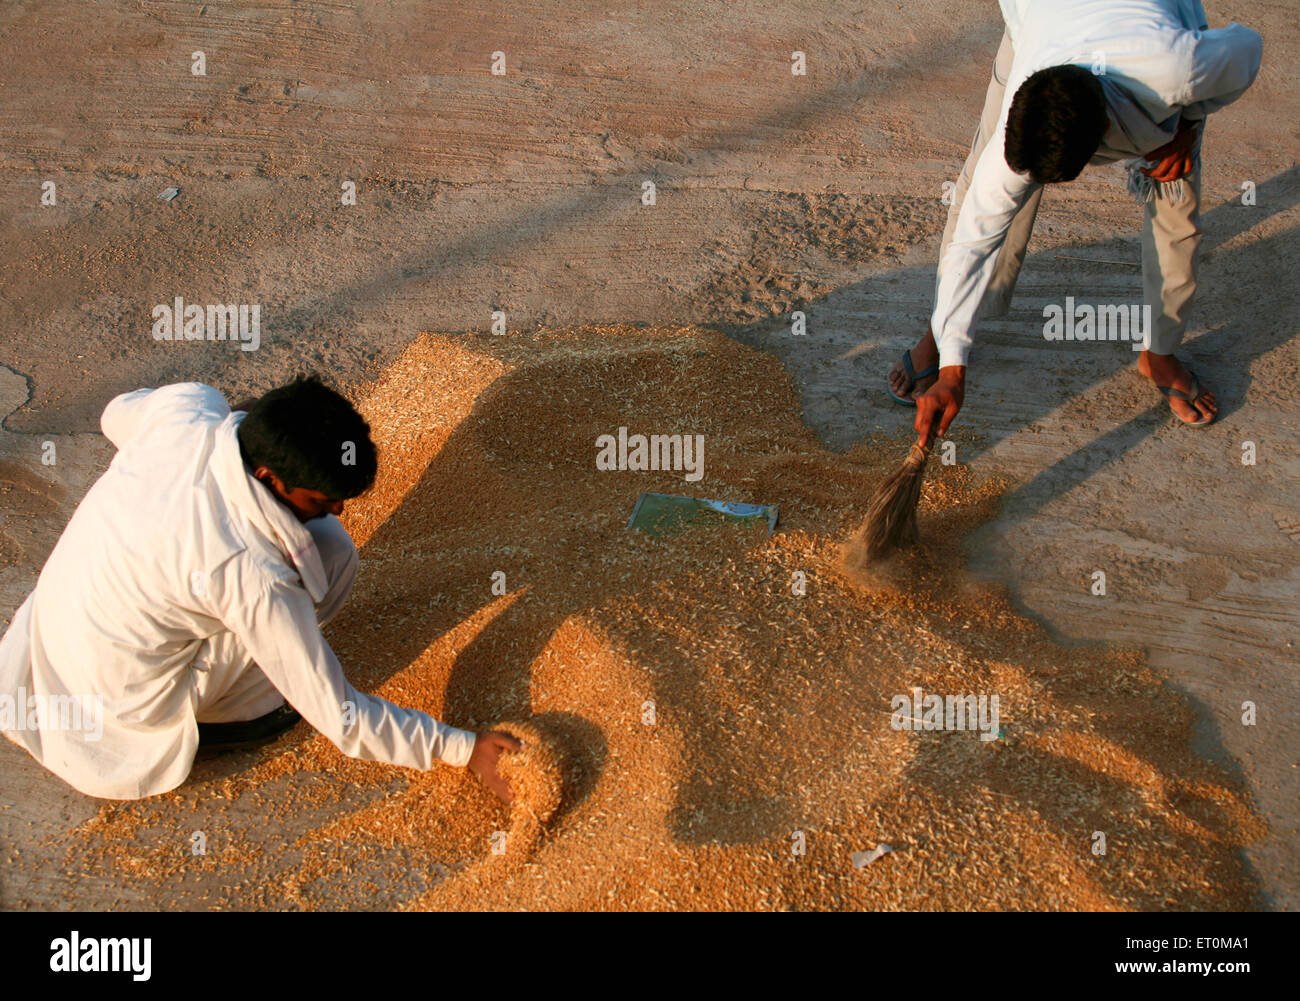 Les travailleurs qui travaillent sur les piles de blé à Harsud Mandi ; céréales alimentaires dans le marché ; Madhya Pradesh Bhopal Inde ; Banque D'Images